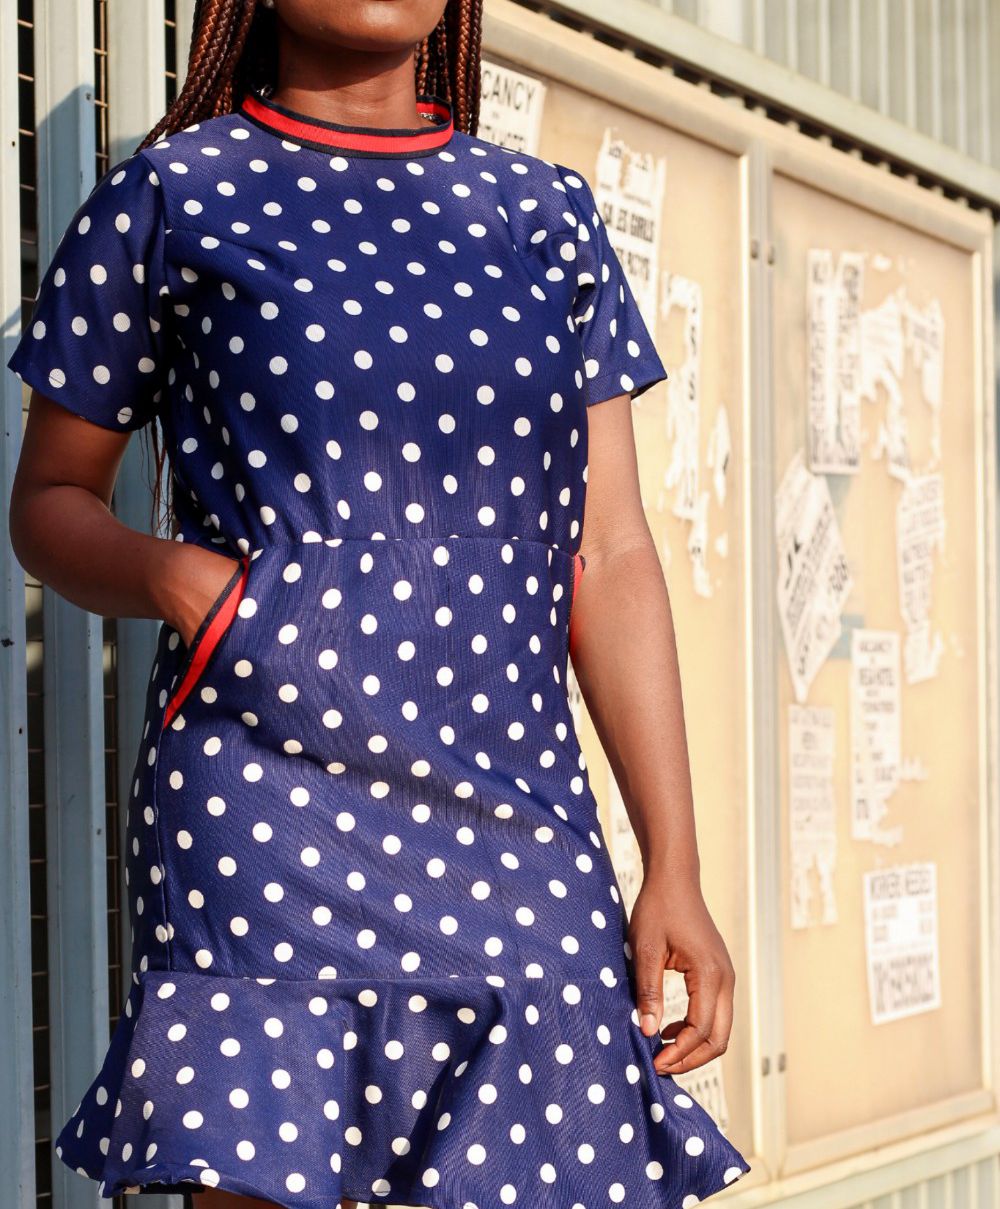 abuja fashion blogger in polka dot trend